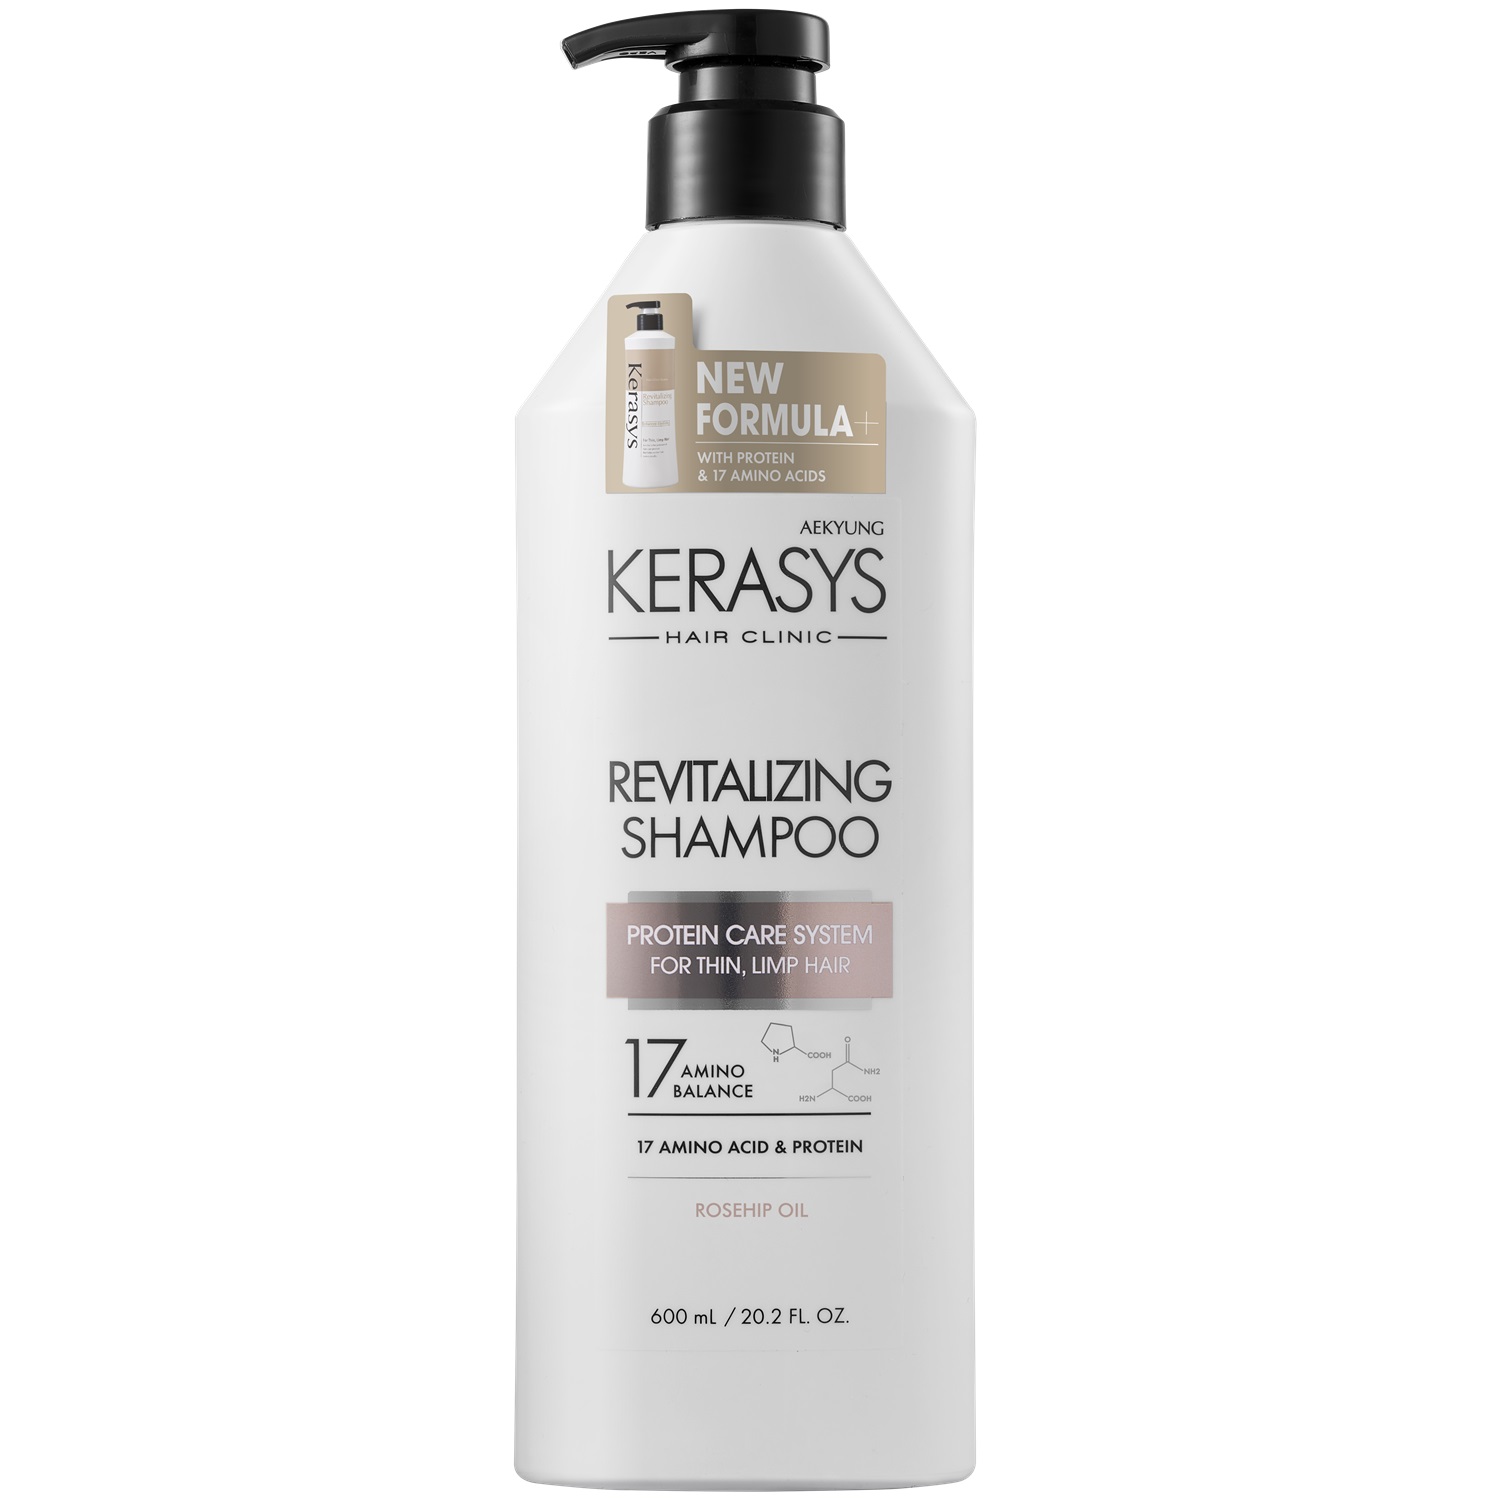 Kerasys Шампунь оздоравливающий для волос, 600 мл (Kerasys, Hair Clinic)